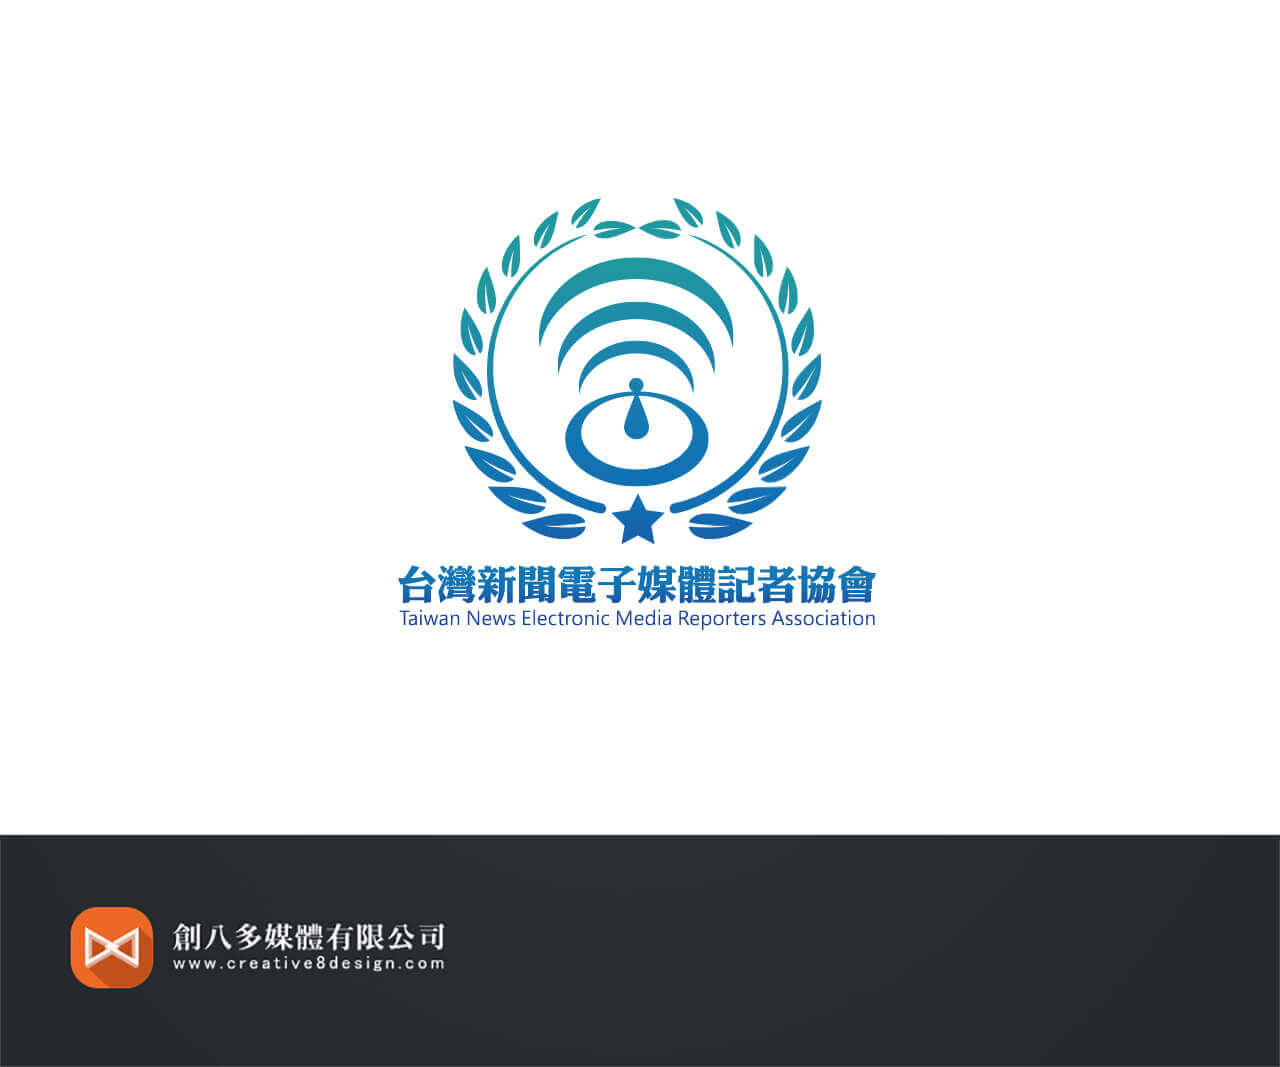 台灣新聞電子媒體記者協會-LOGO設計的圖片